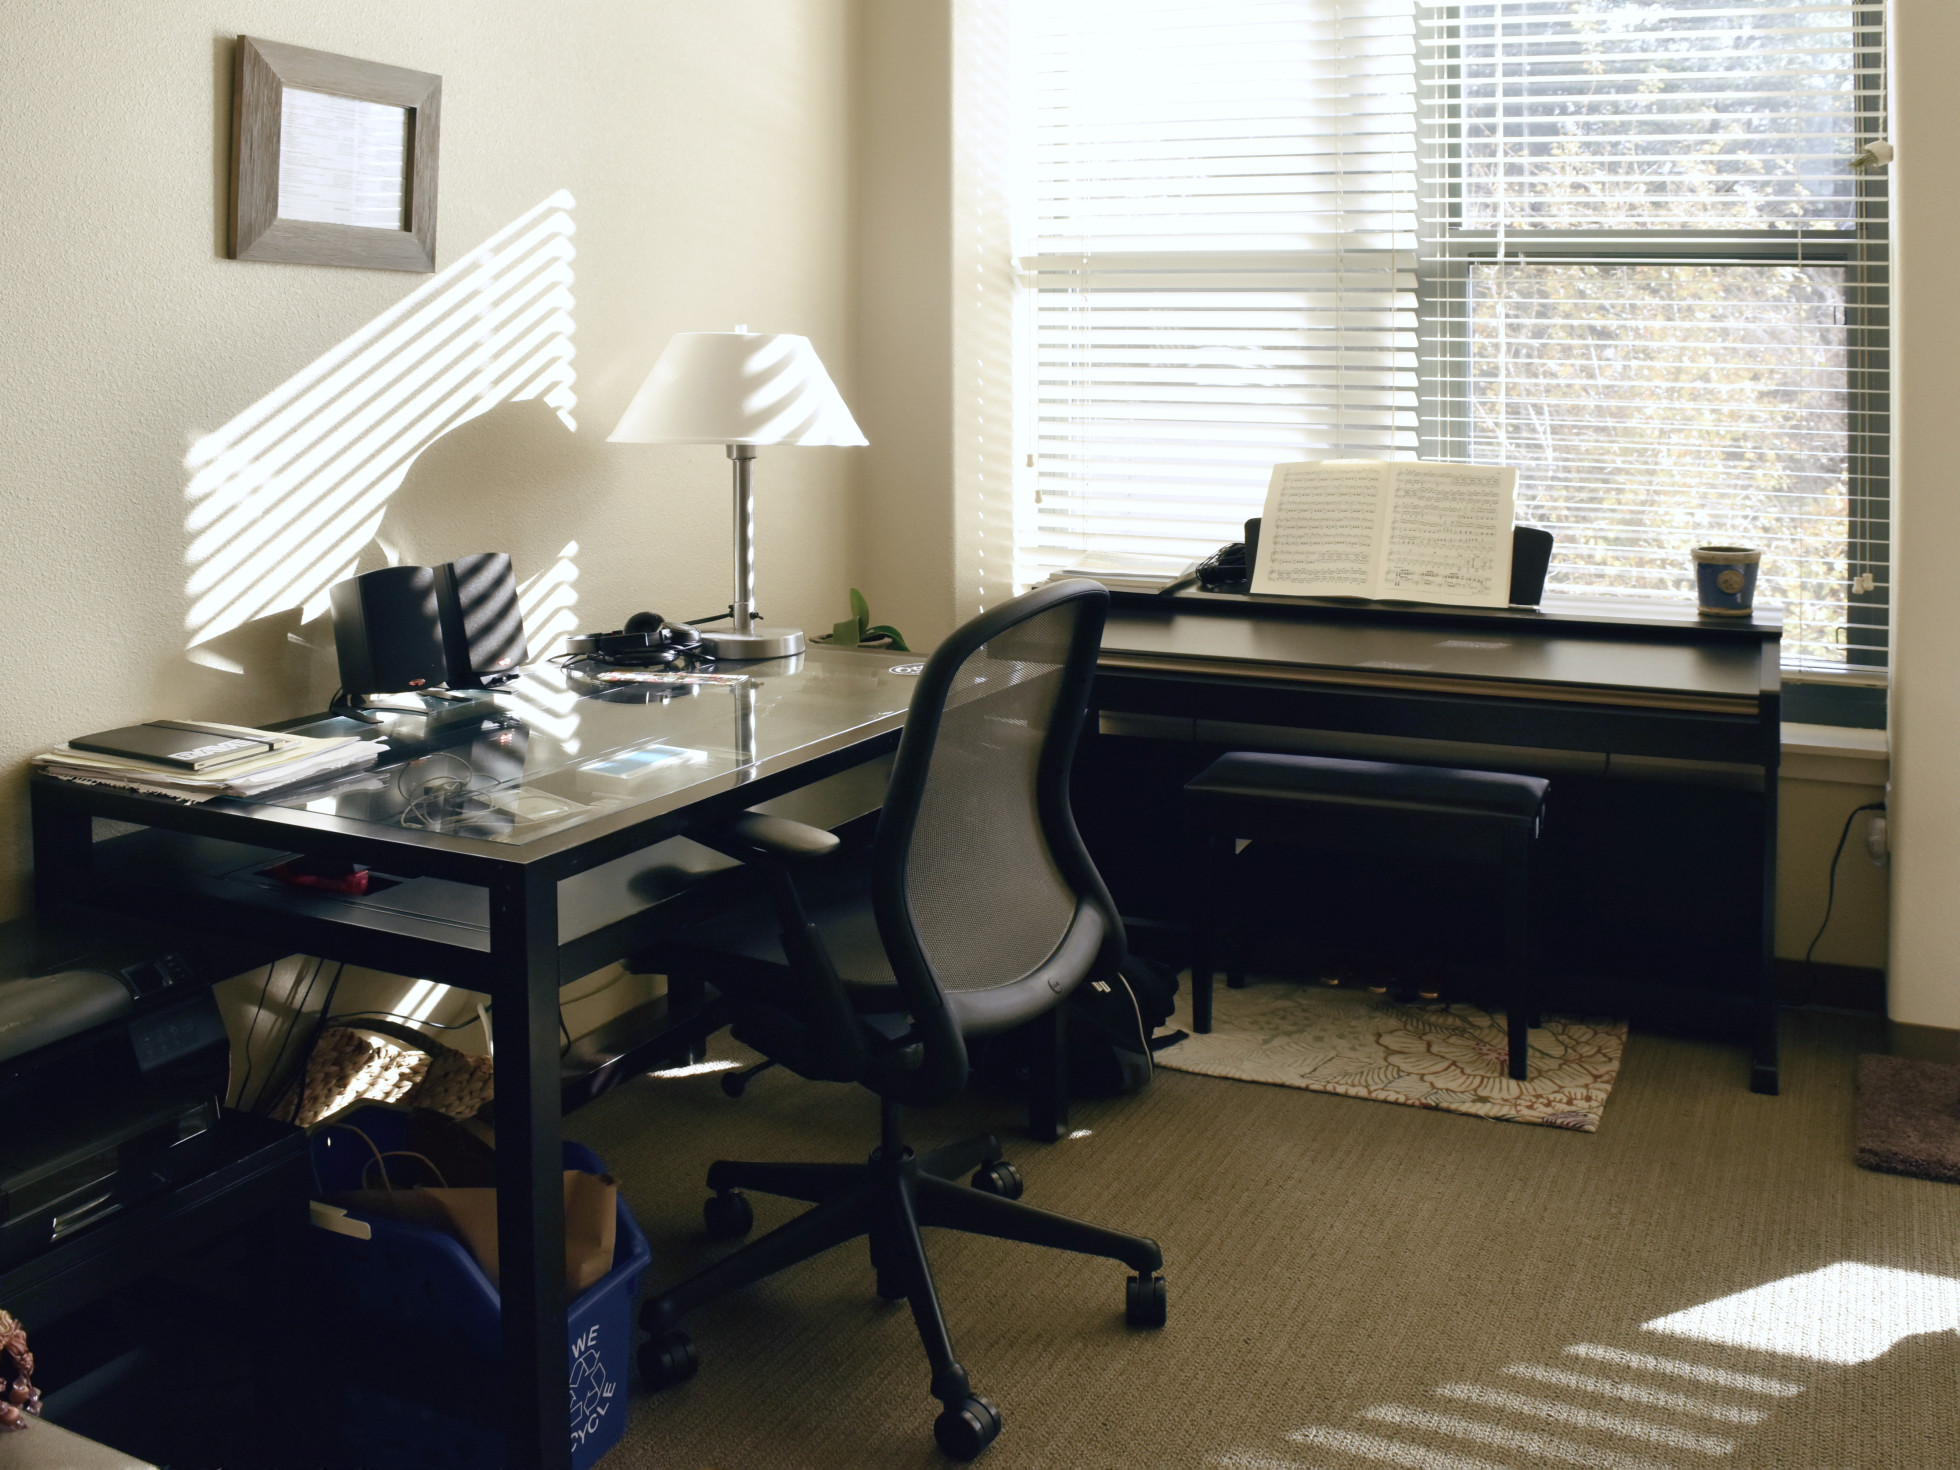 Holzjalousien und Alujalousien können auch das Home Office wohnlicher machen. Foto: Anyra via Twenty20